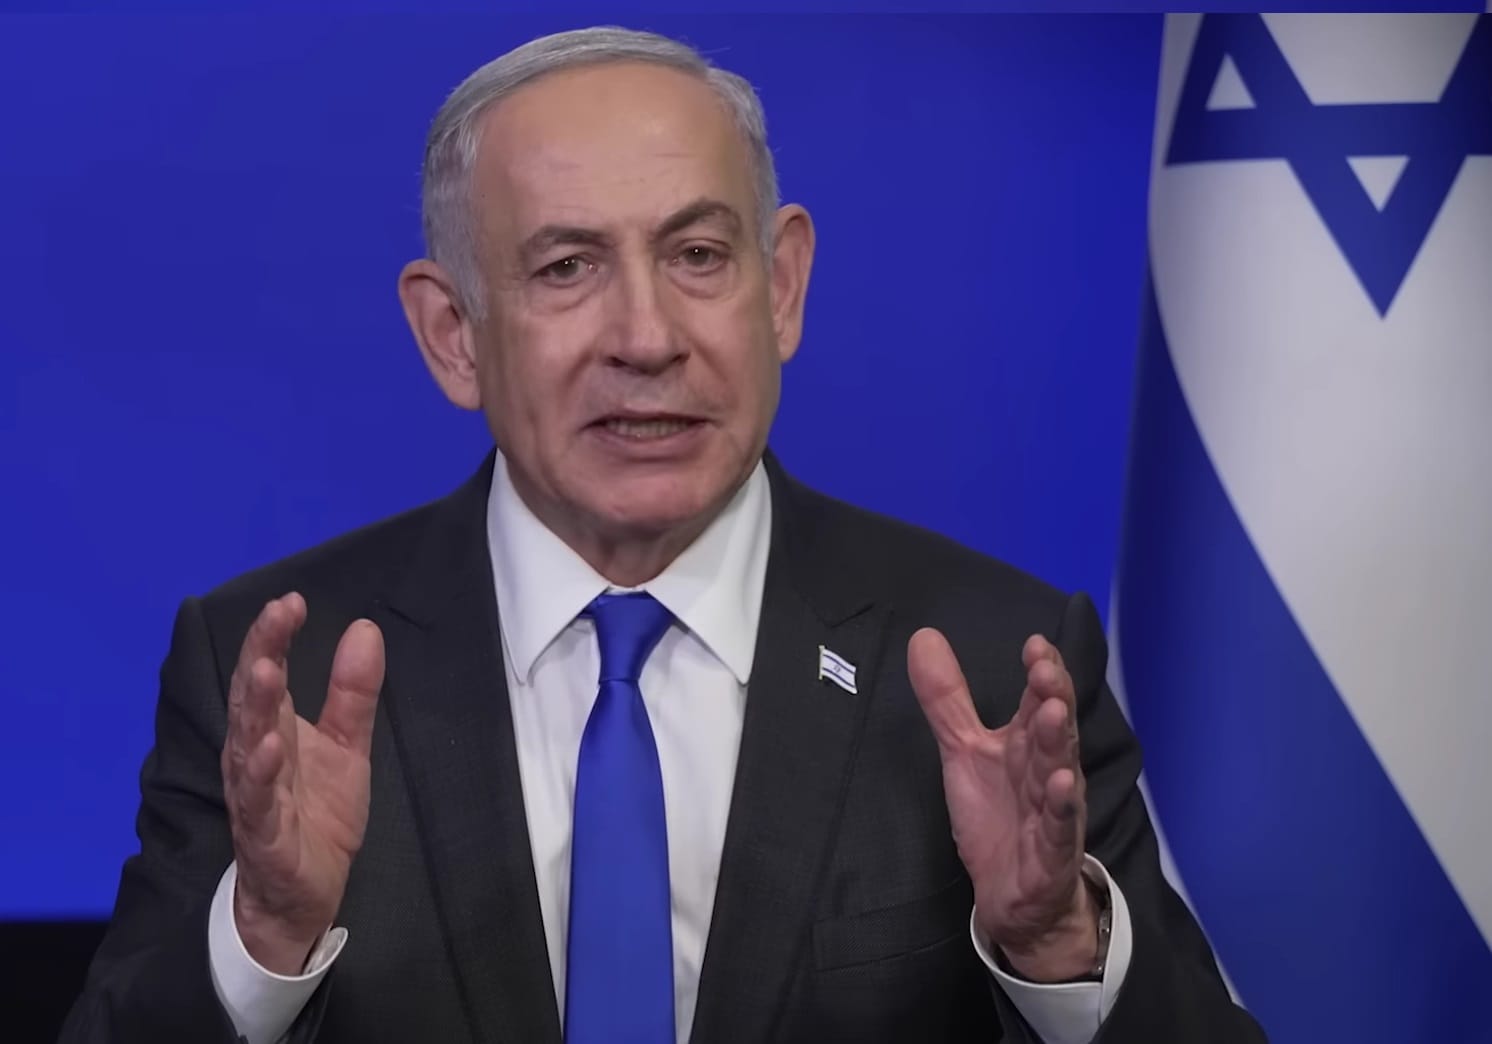 "Mint Németország az 1930-as években" - Netanjahu reagált az amerikában zajló tüntetésekre